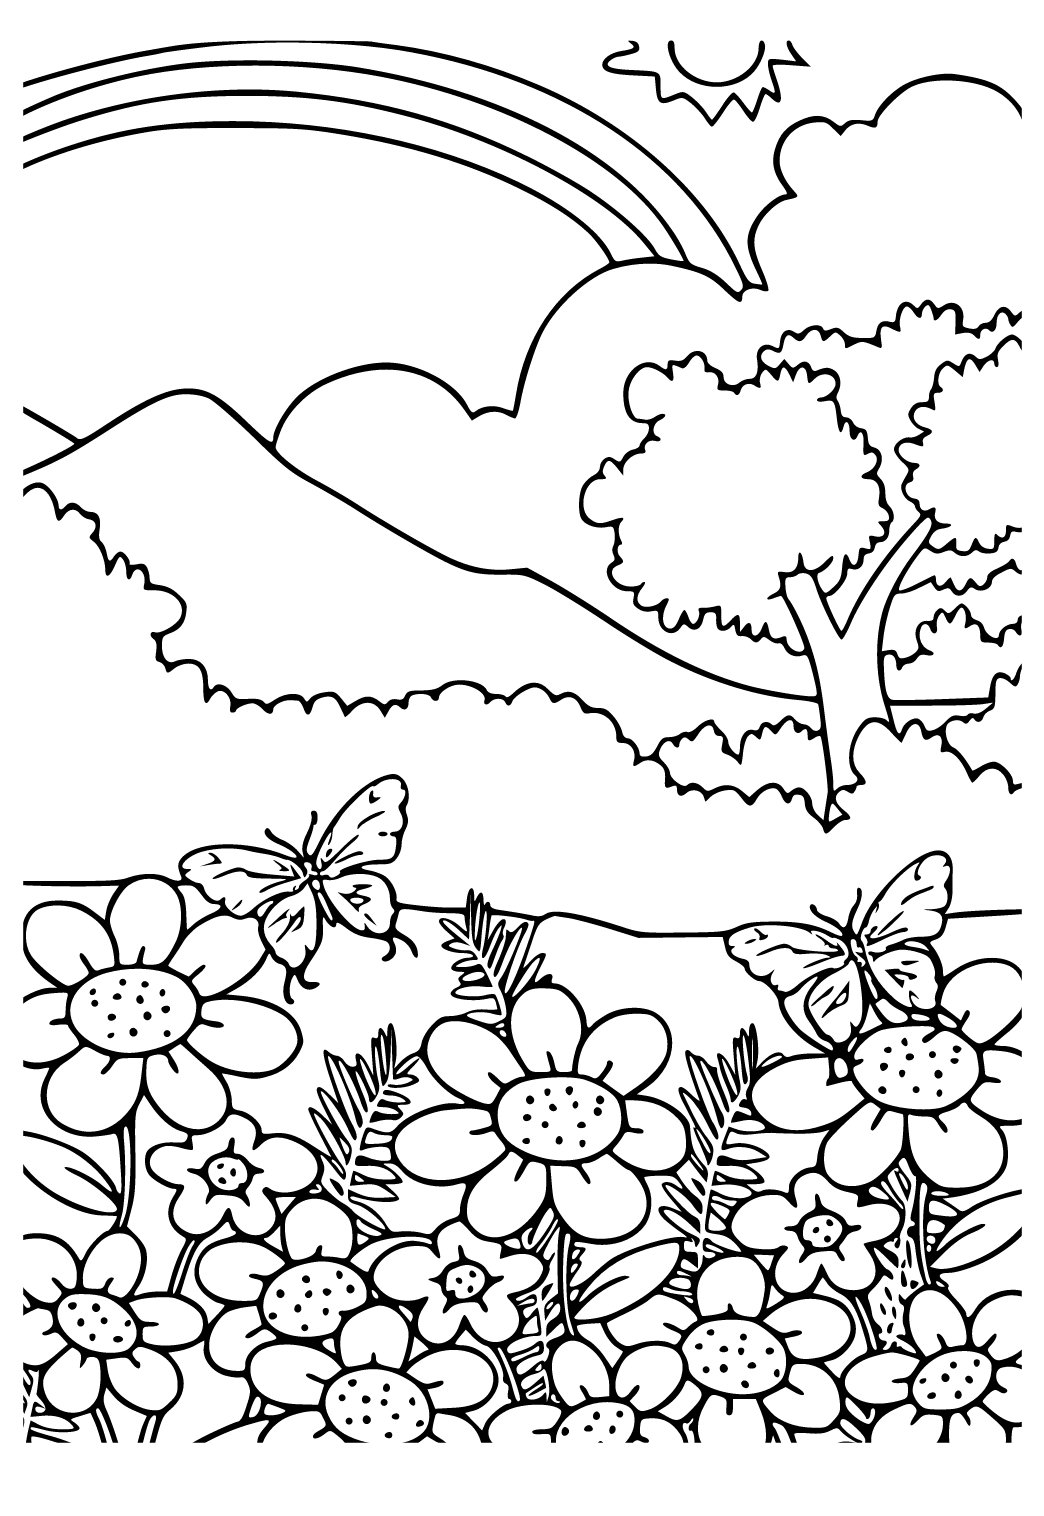 Kawaii da Natureza para colorir - Desenhos Imprimir